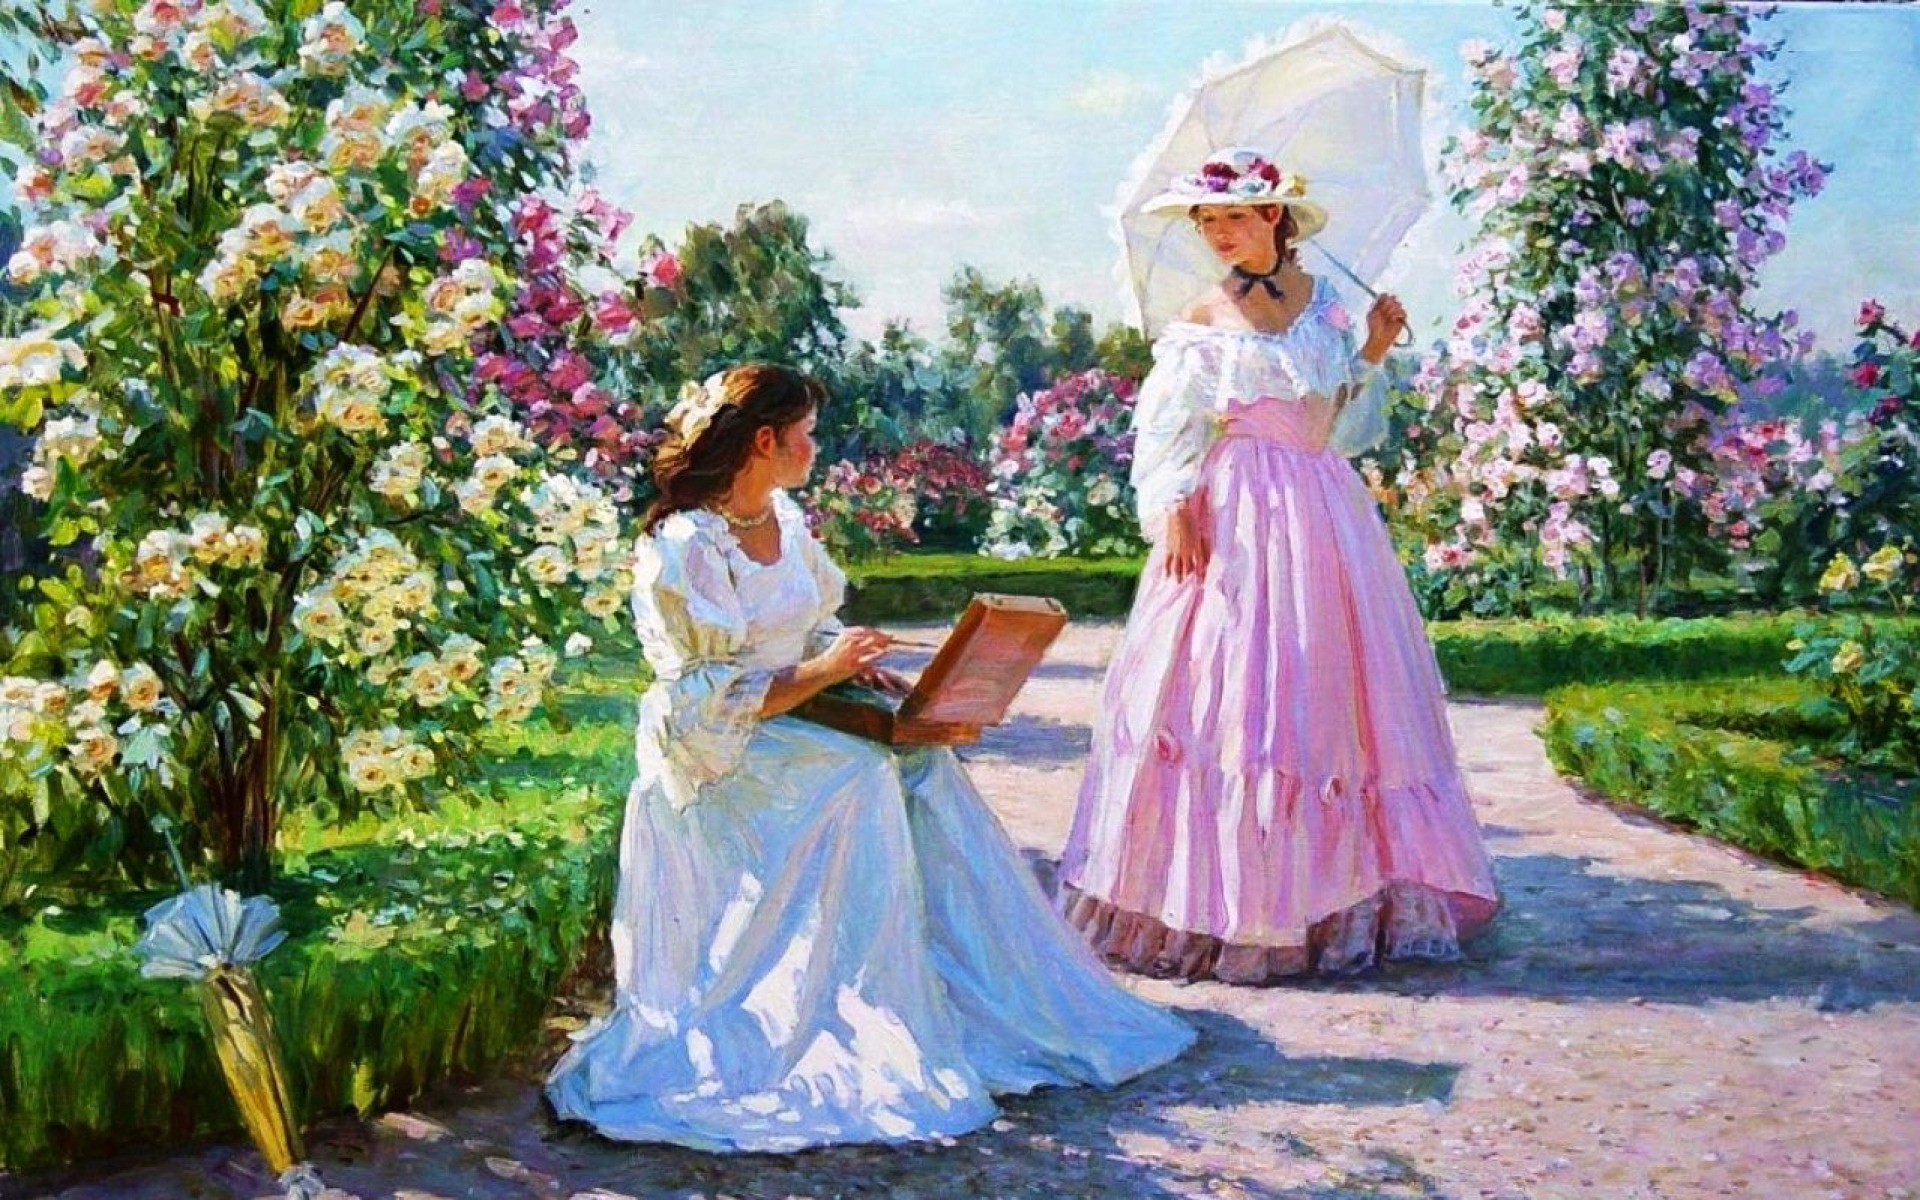 1920x1200 Image: Women & Beautiful Rose Garden wallpapers and stock photos. Â«